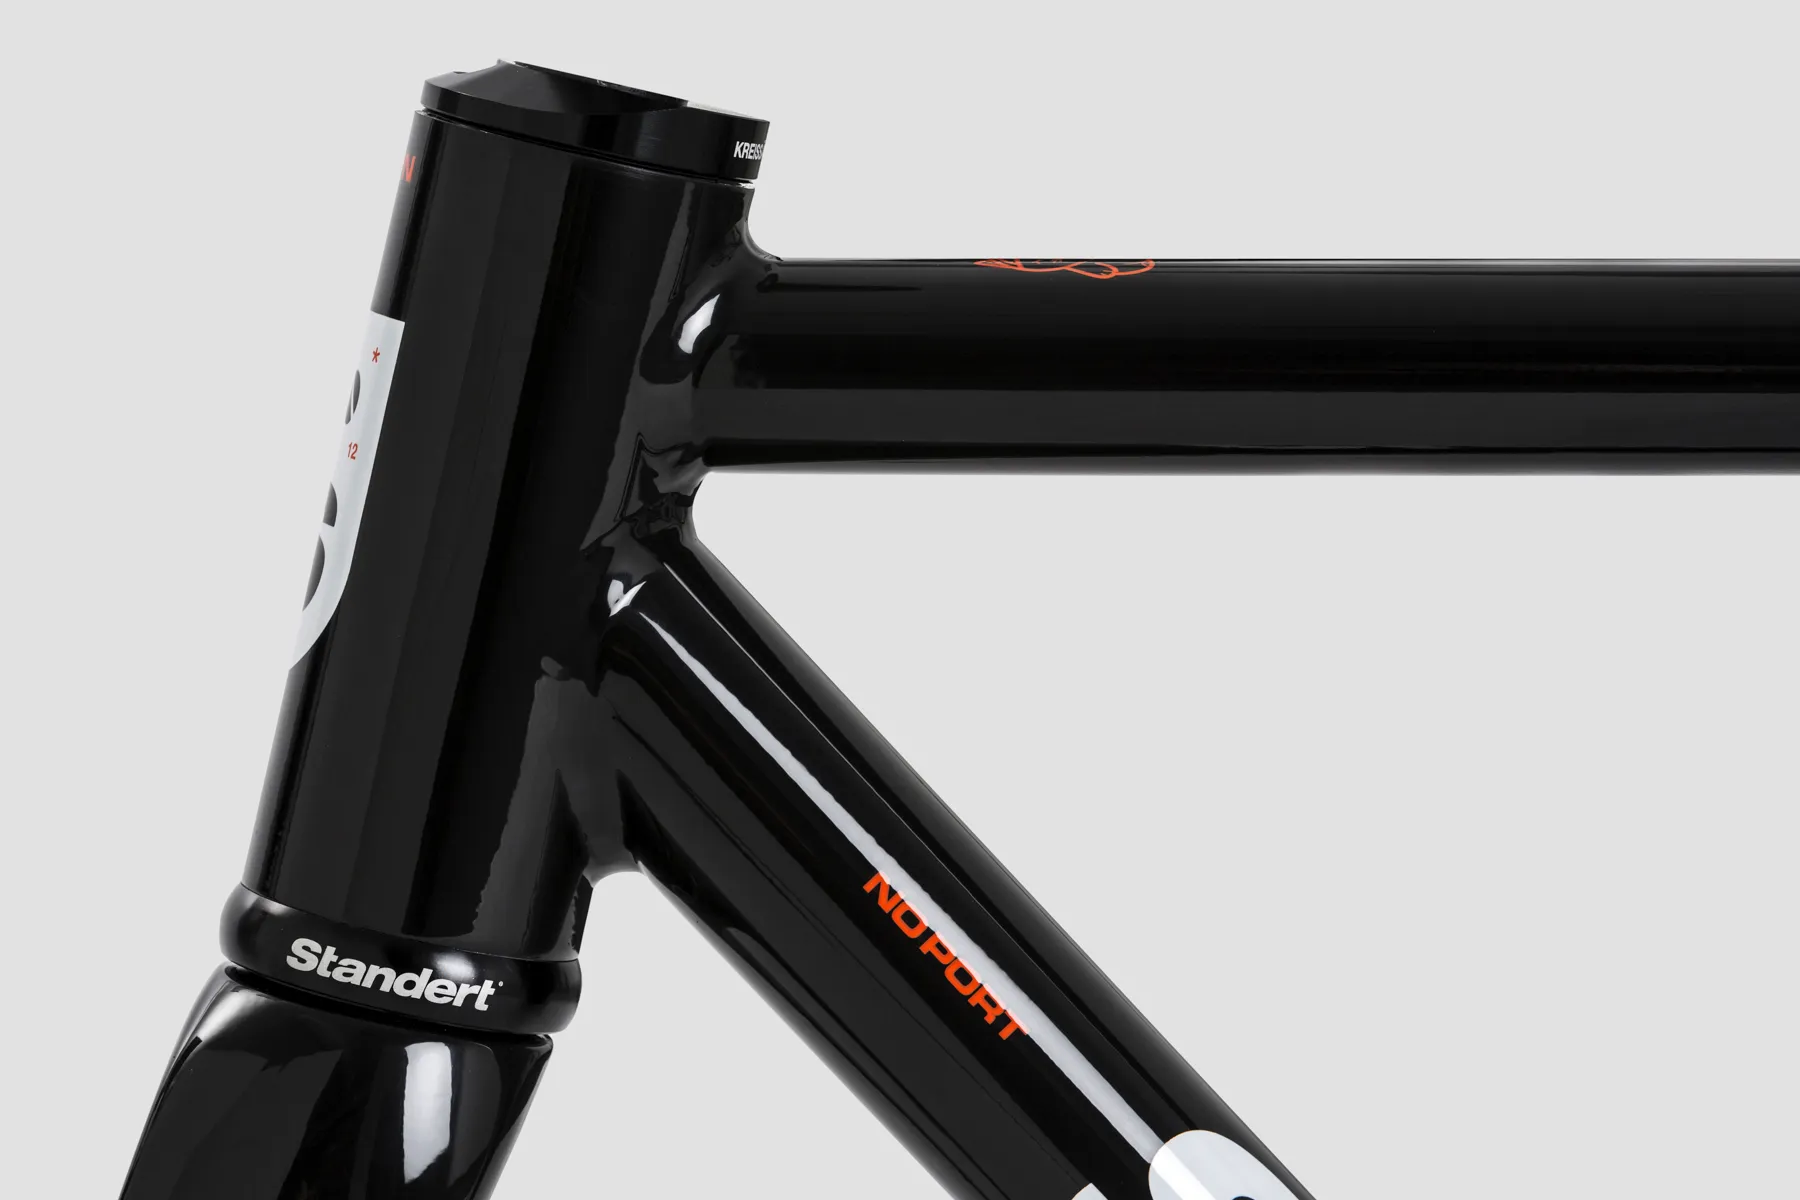 Kreissage RS Black Road Bike Frameset Made for Racing